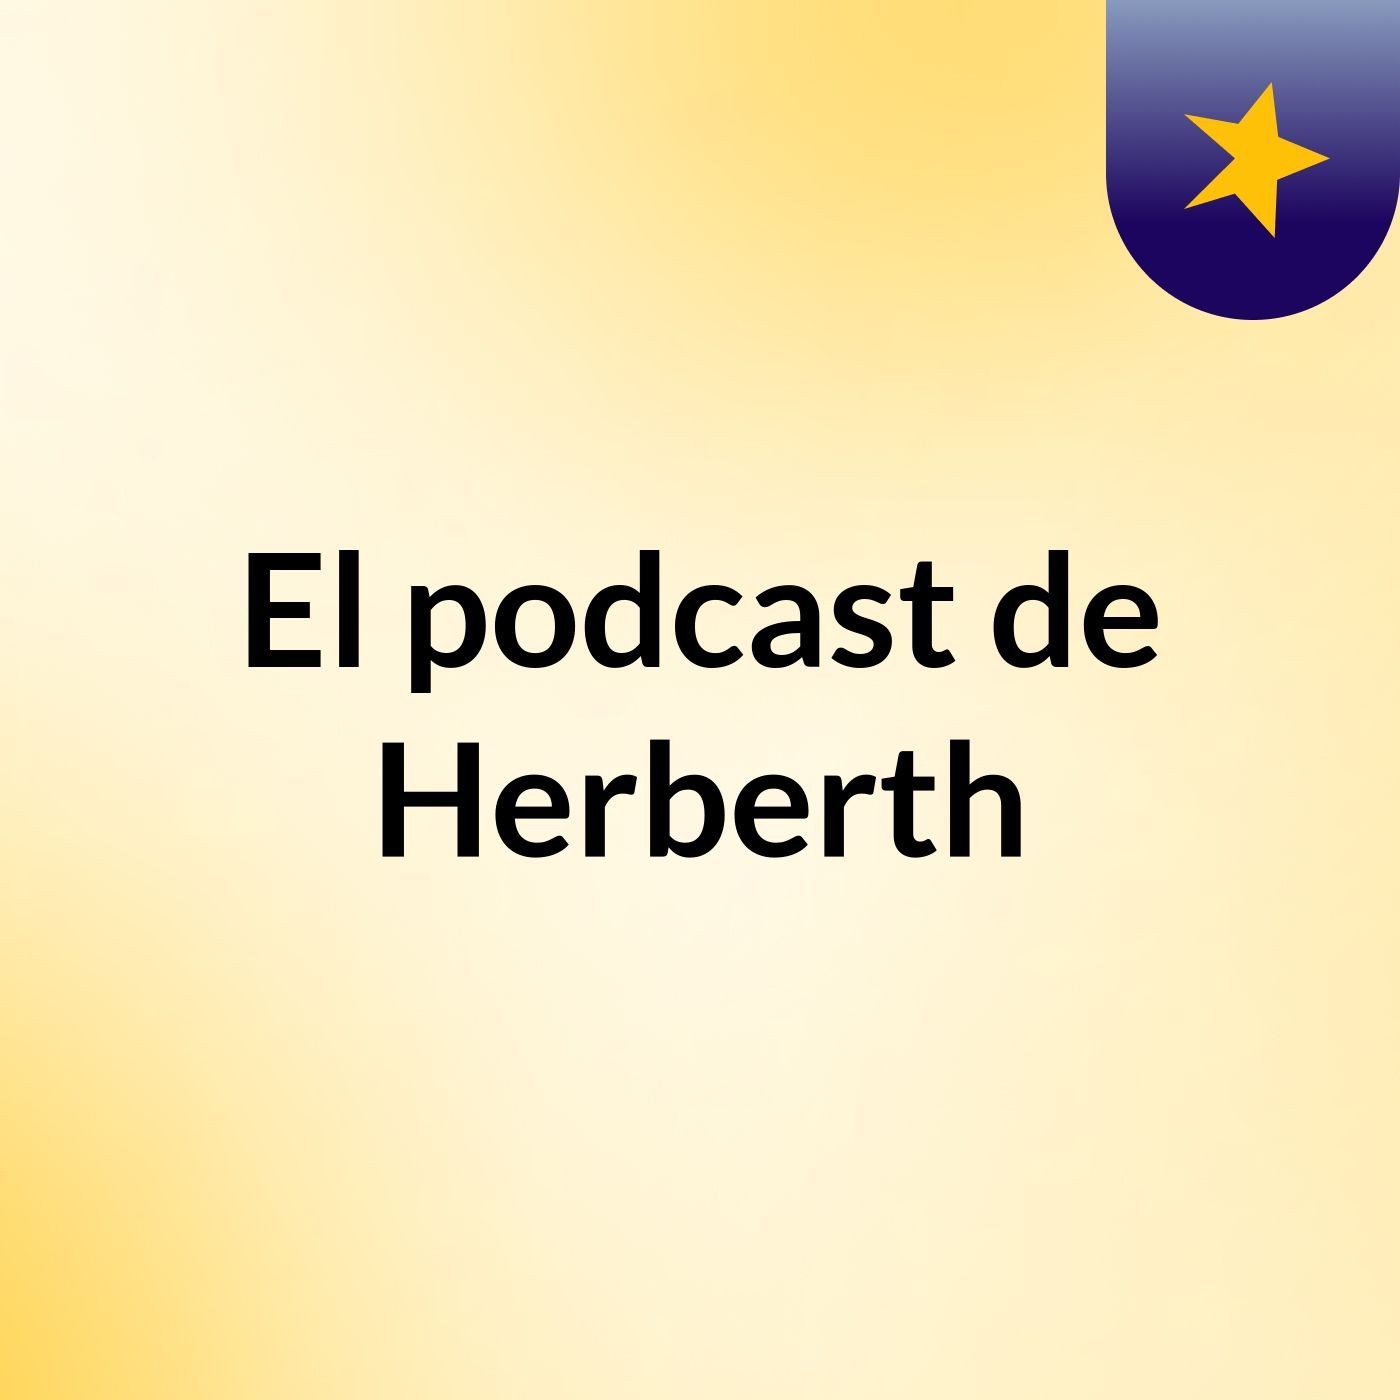 El podcast de Herberth